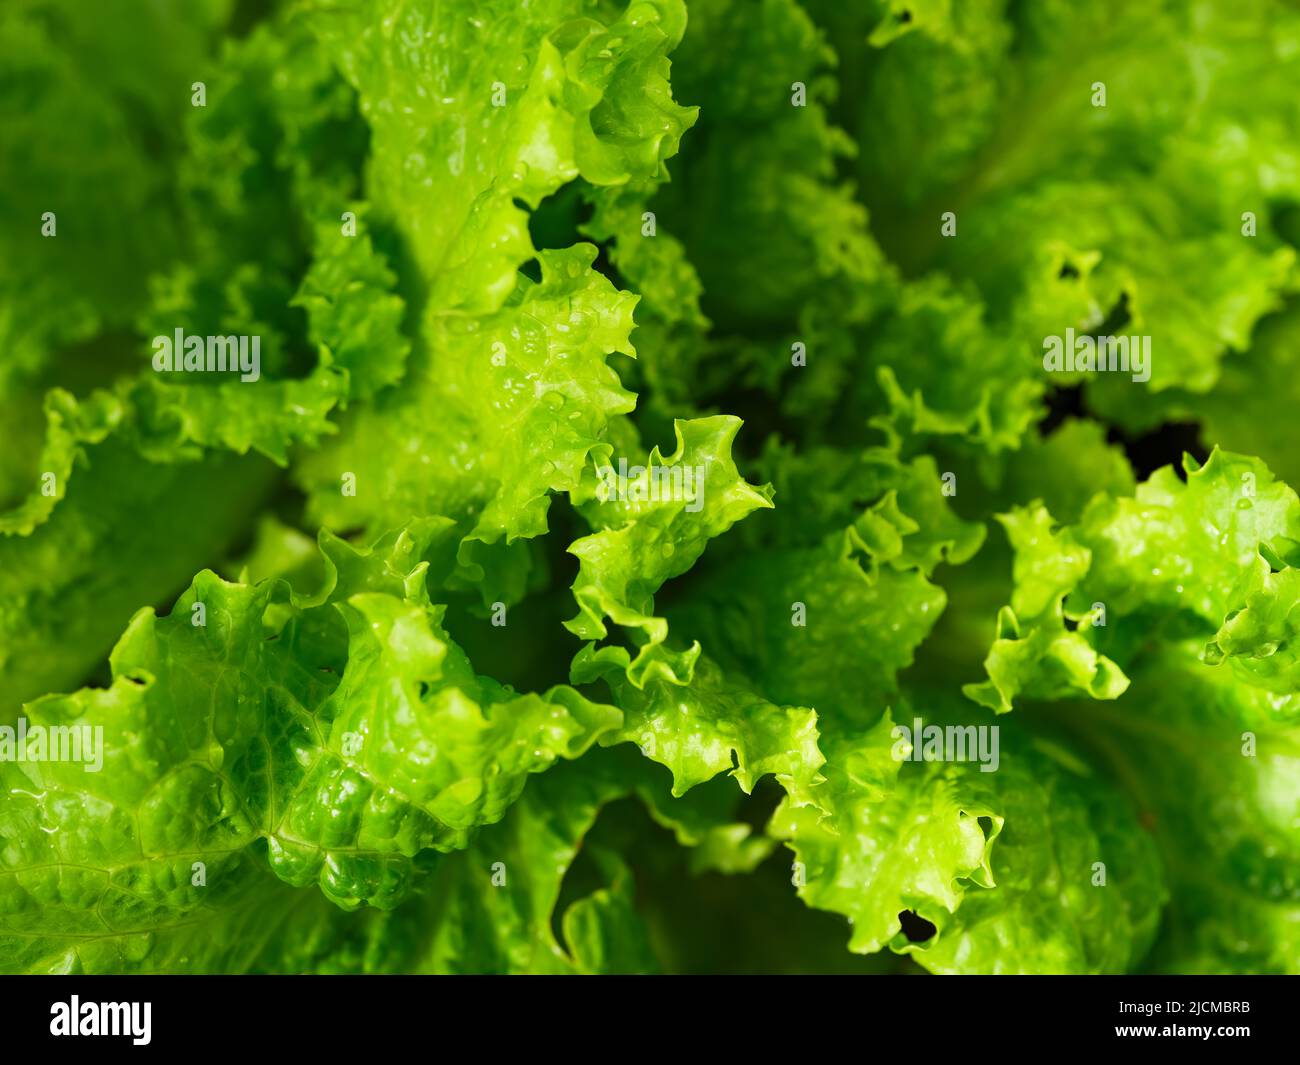 Eine Nahaufnahme eines frischen grünen Salathintergrunds mit Wassertropfen Stockfoto